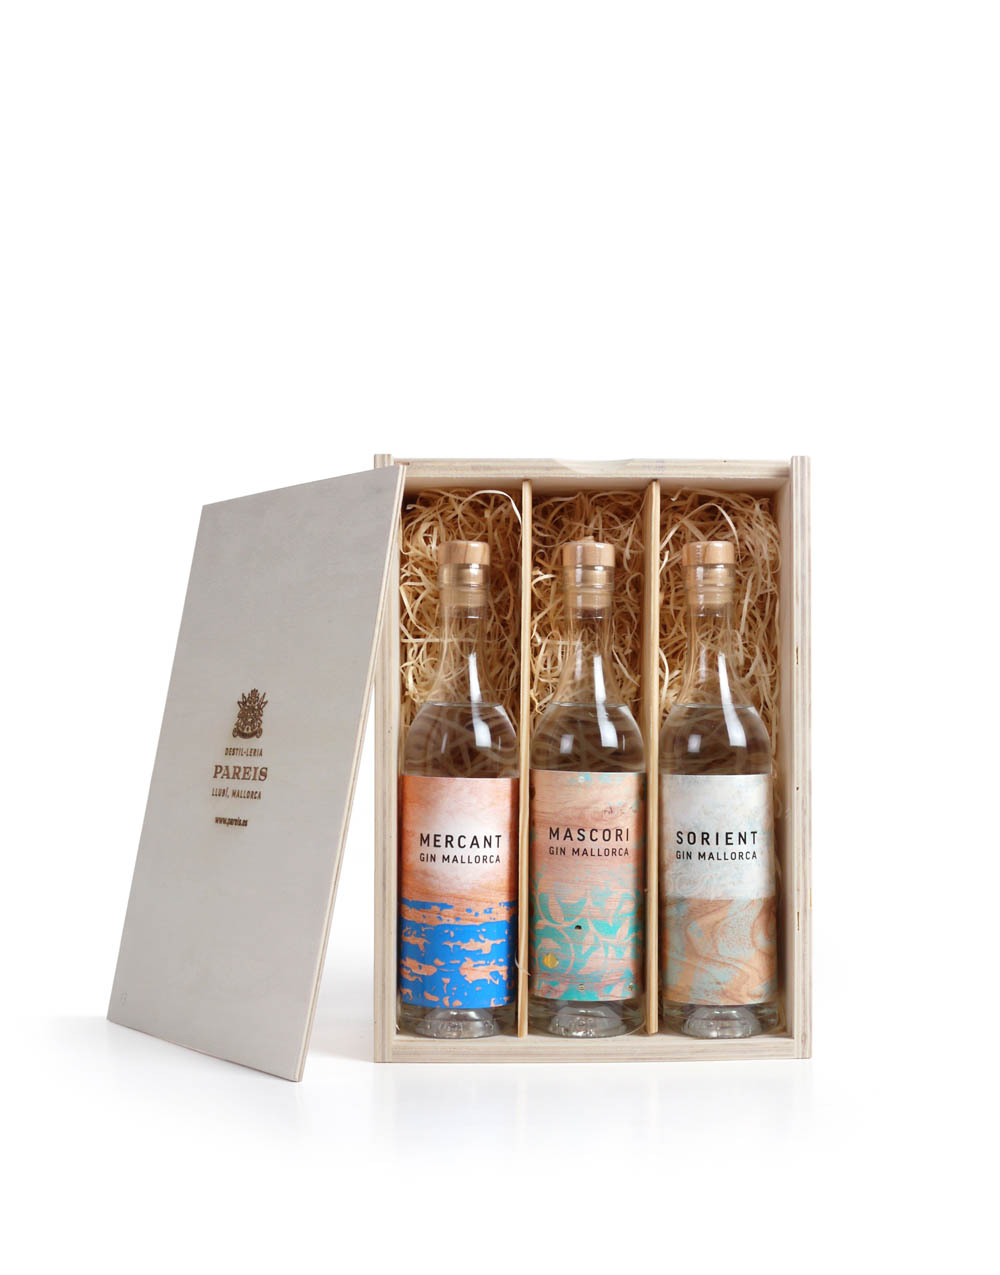 typical-gift-mallorca-typisches-Geschenk-Mallorca-Holzkiste-kleine-Gin-flaschen-wooden-box-small-gin-bottles-destileria-pareis-BG